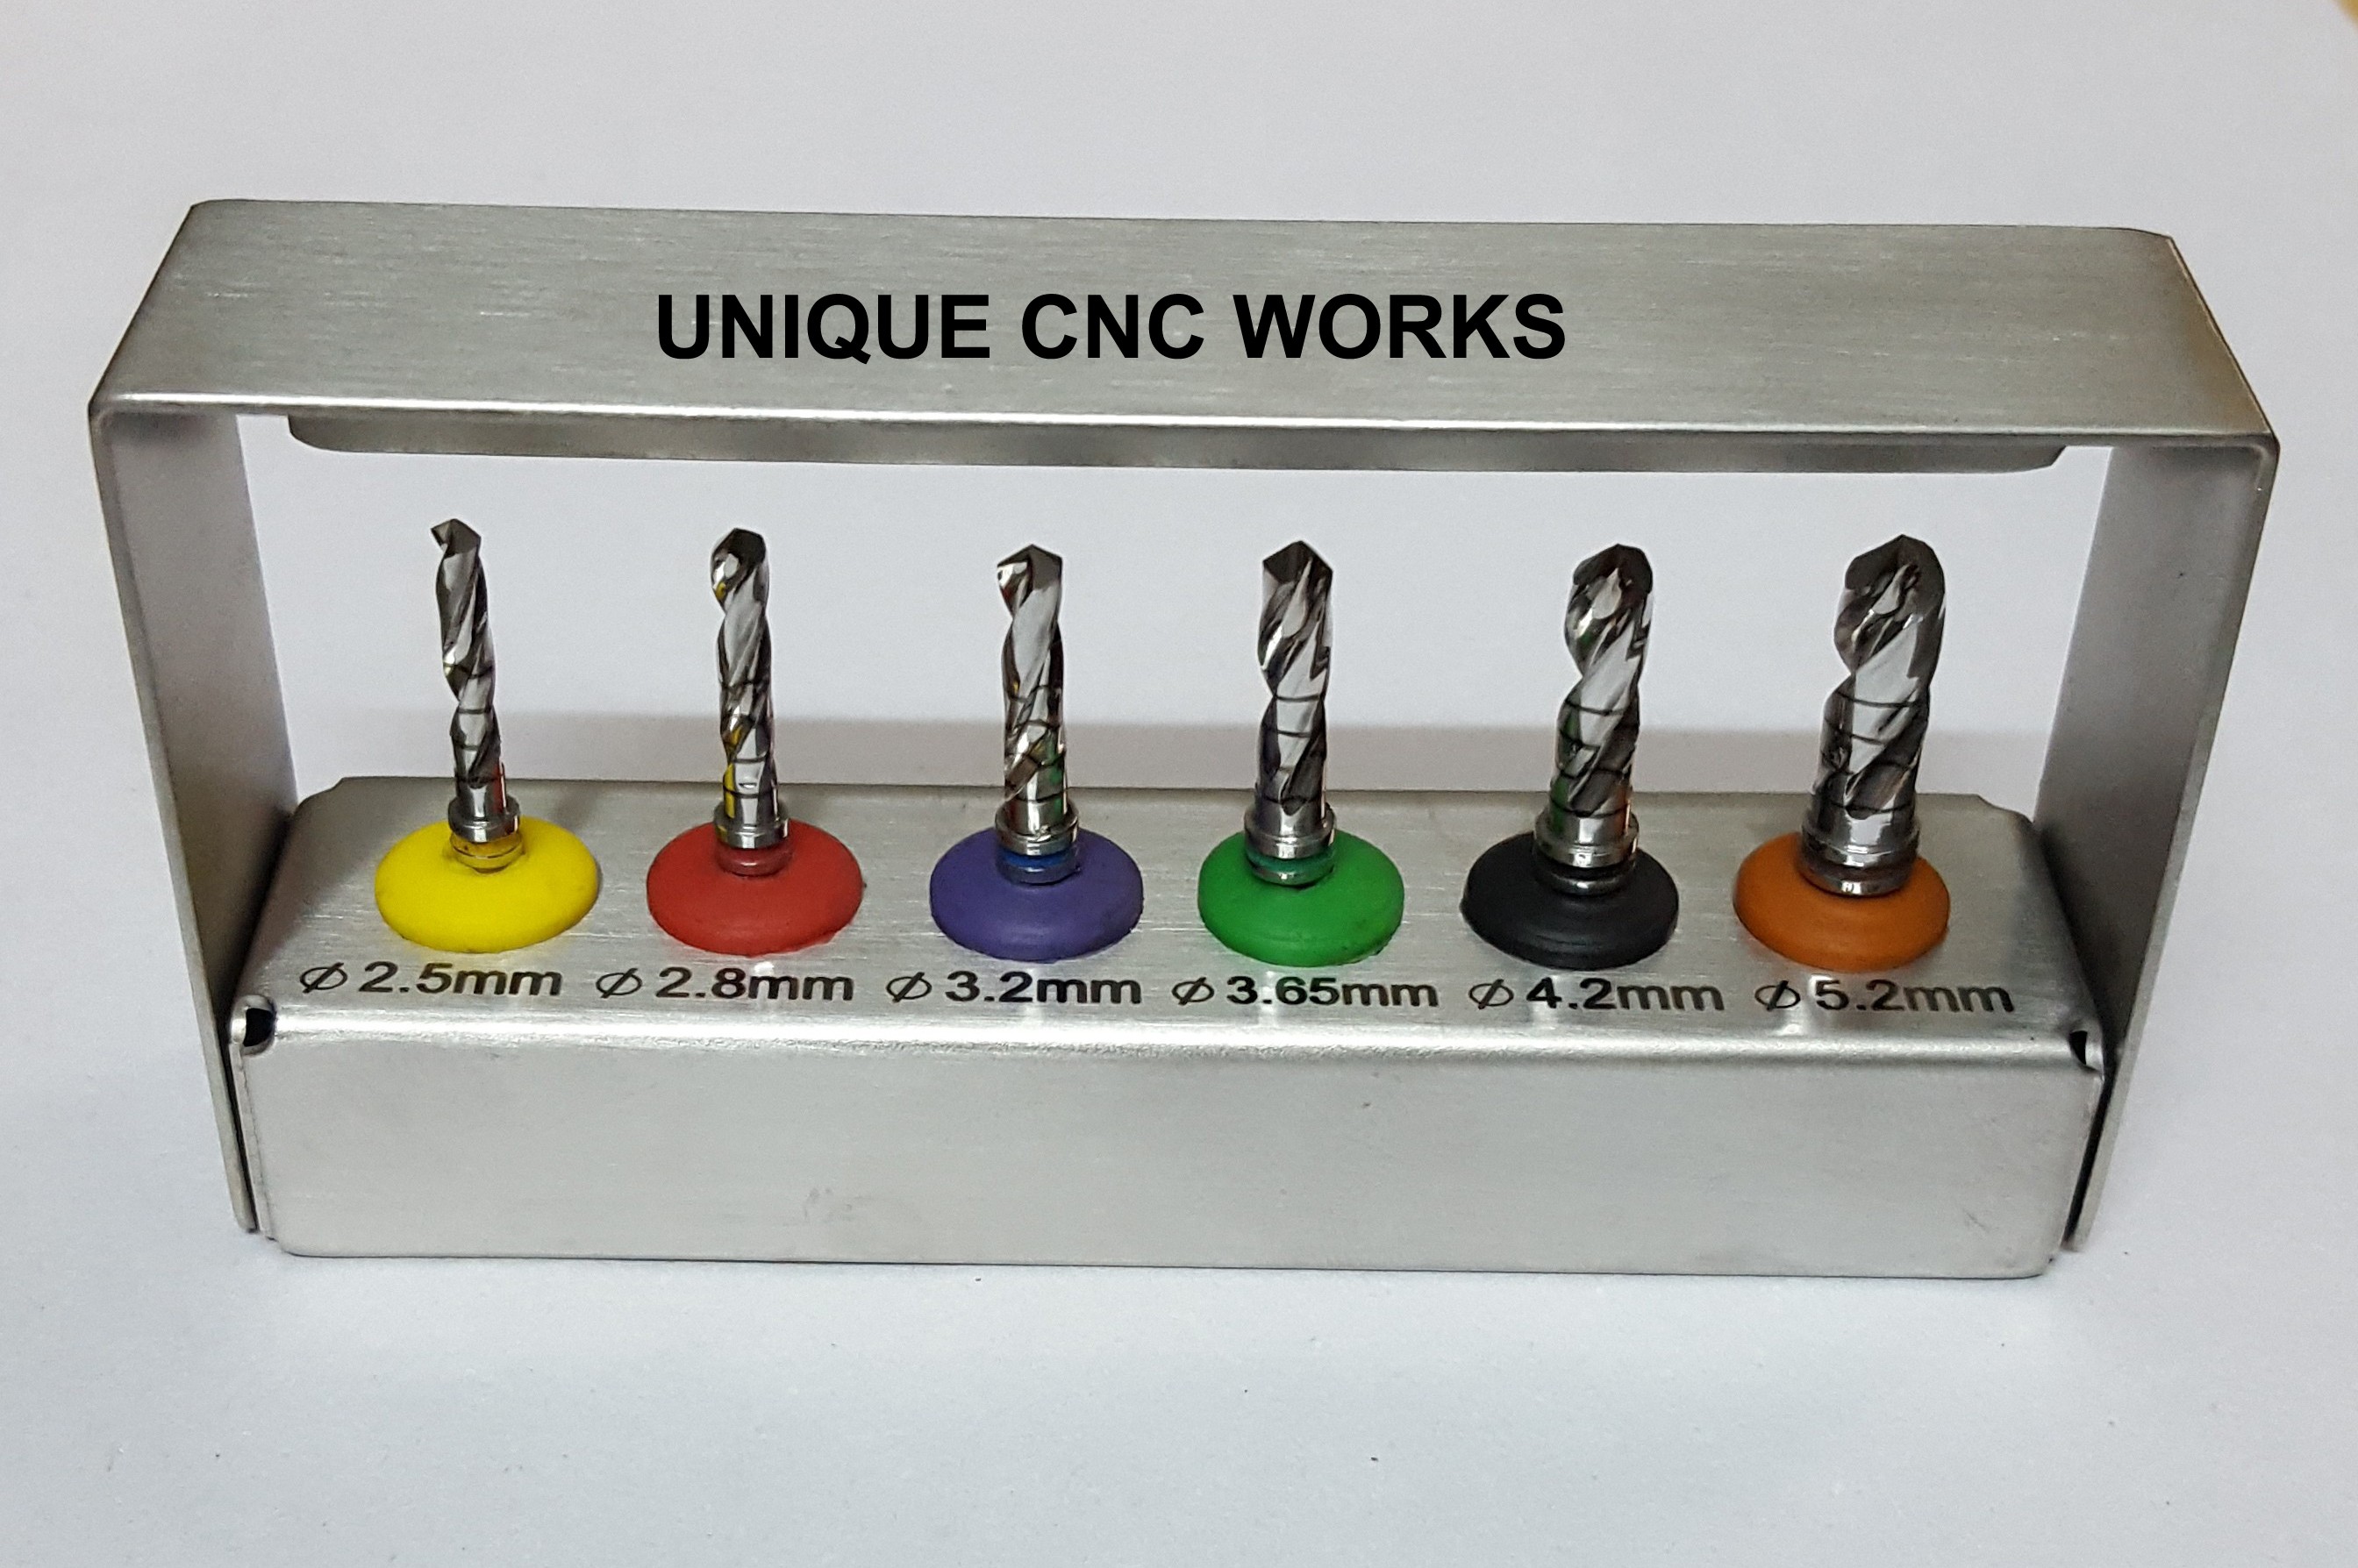 Unique CNC Works